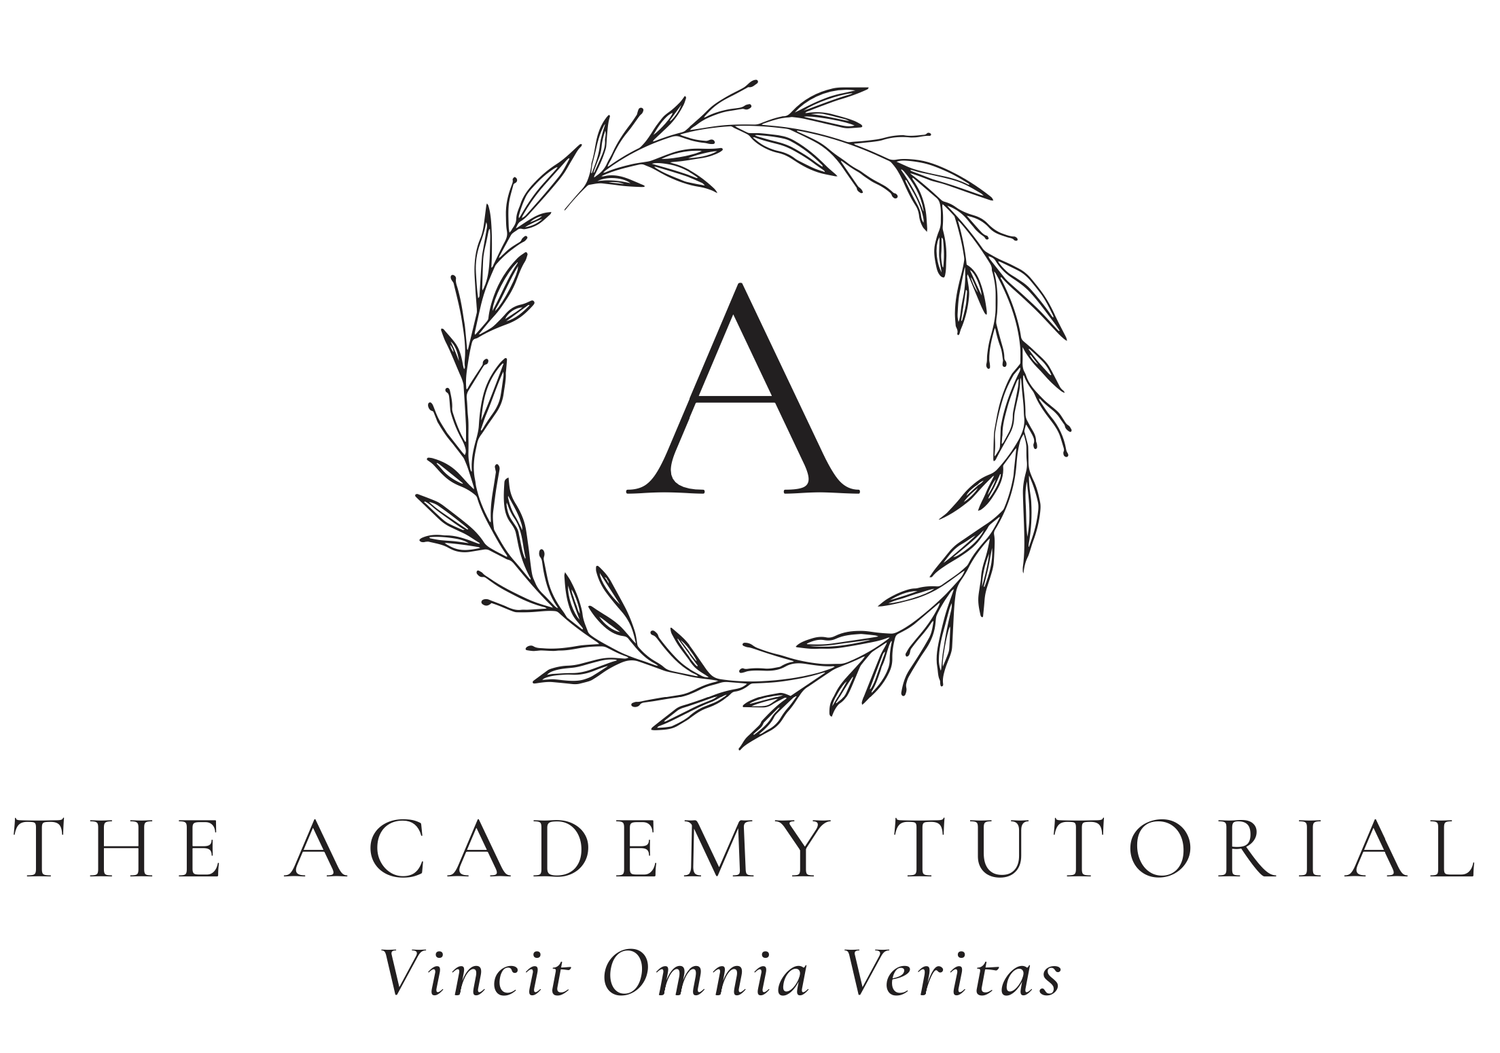 The Academy Tutorial